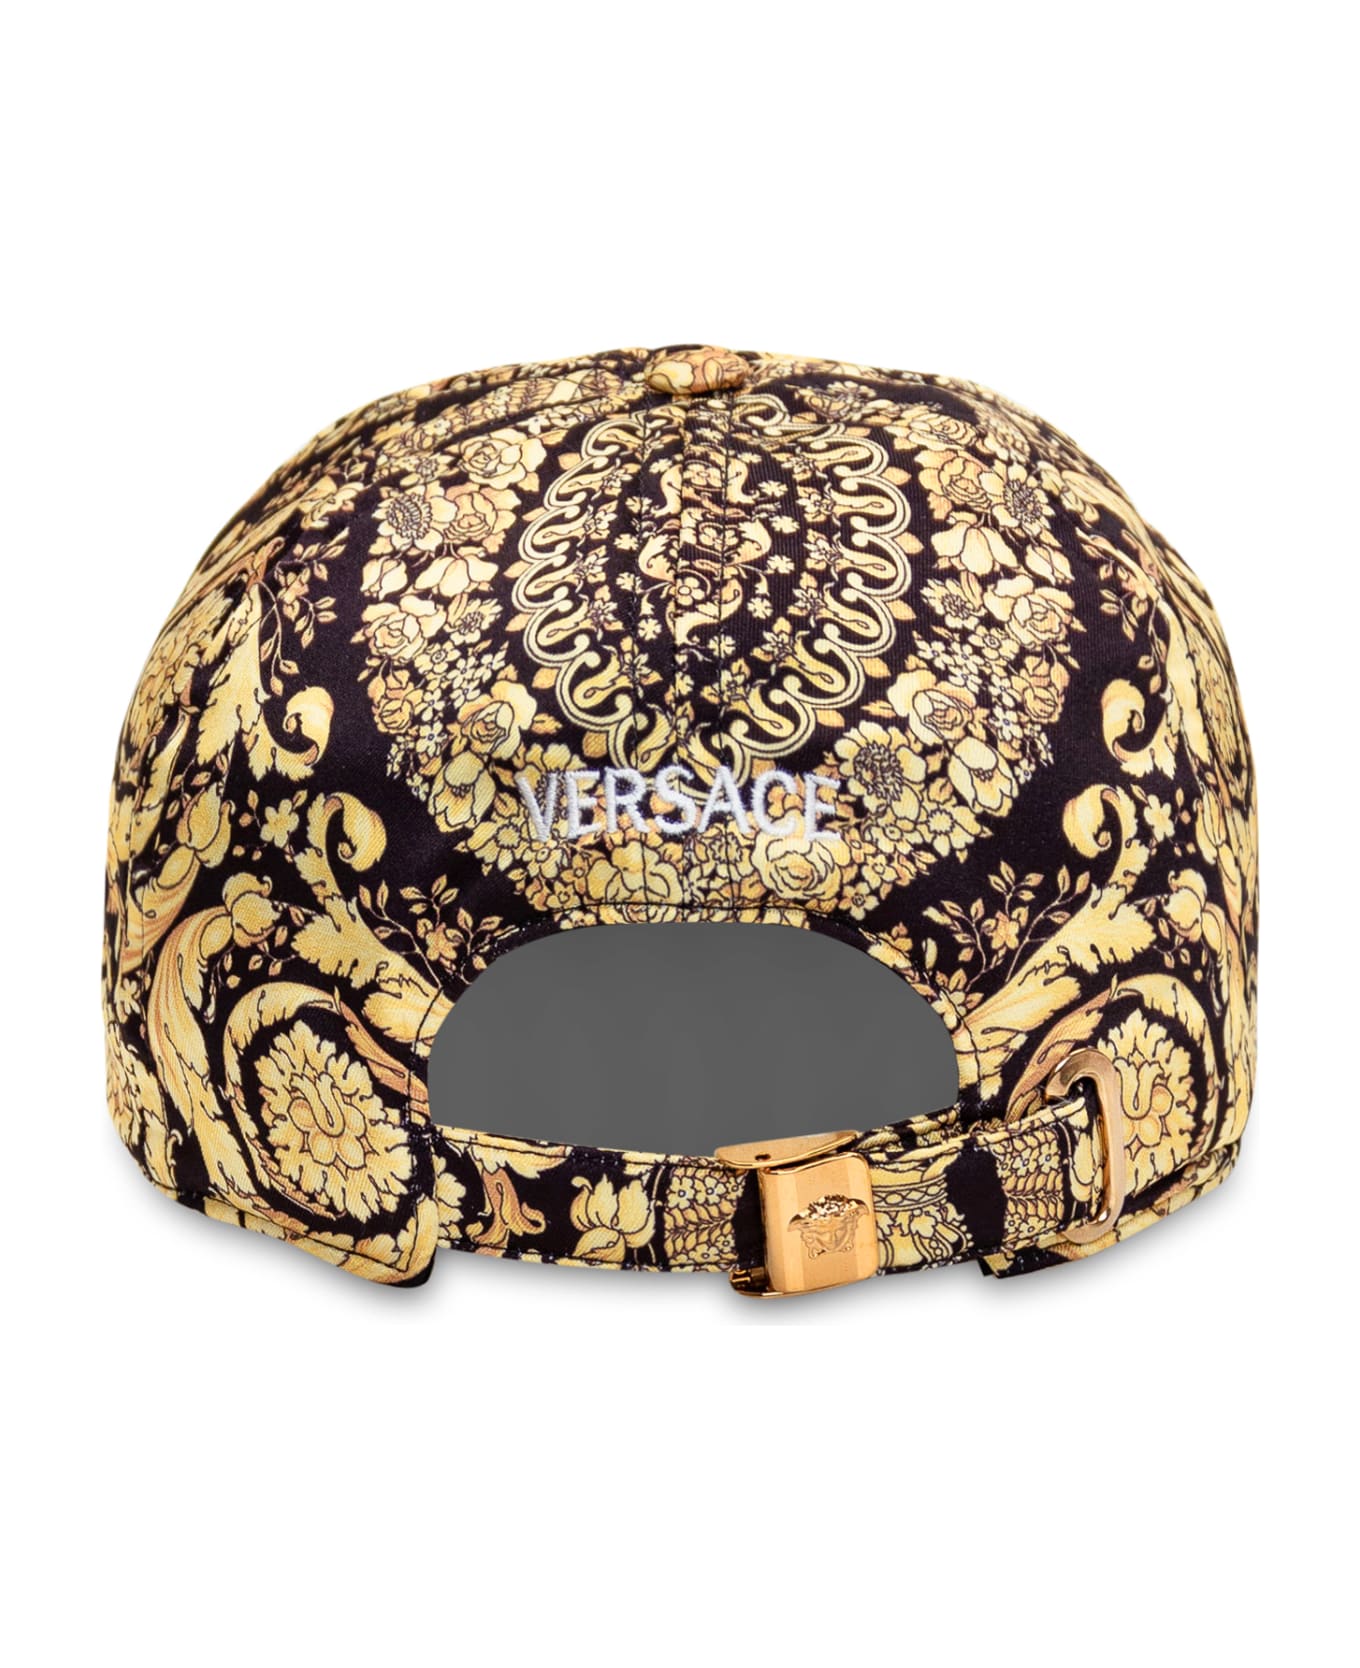 Versace Barocco Baseball Cap - NERO-ORO 帽子